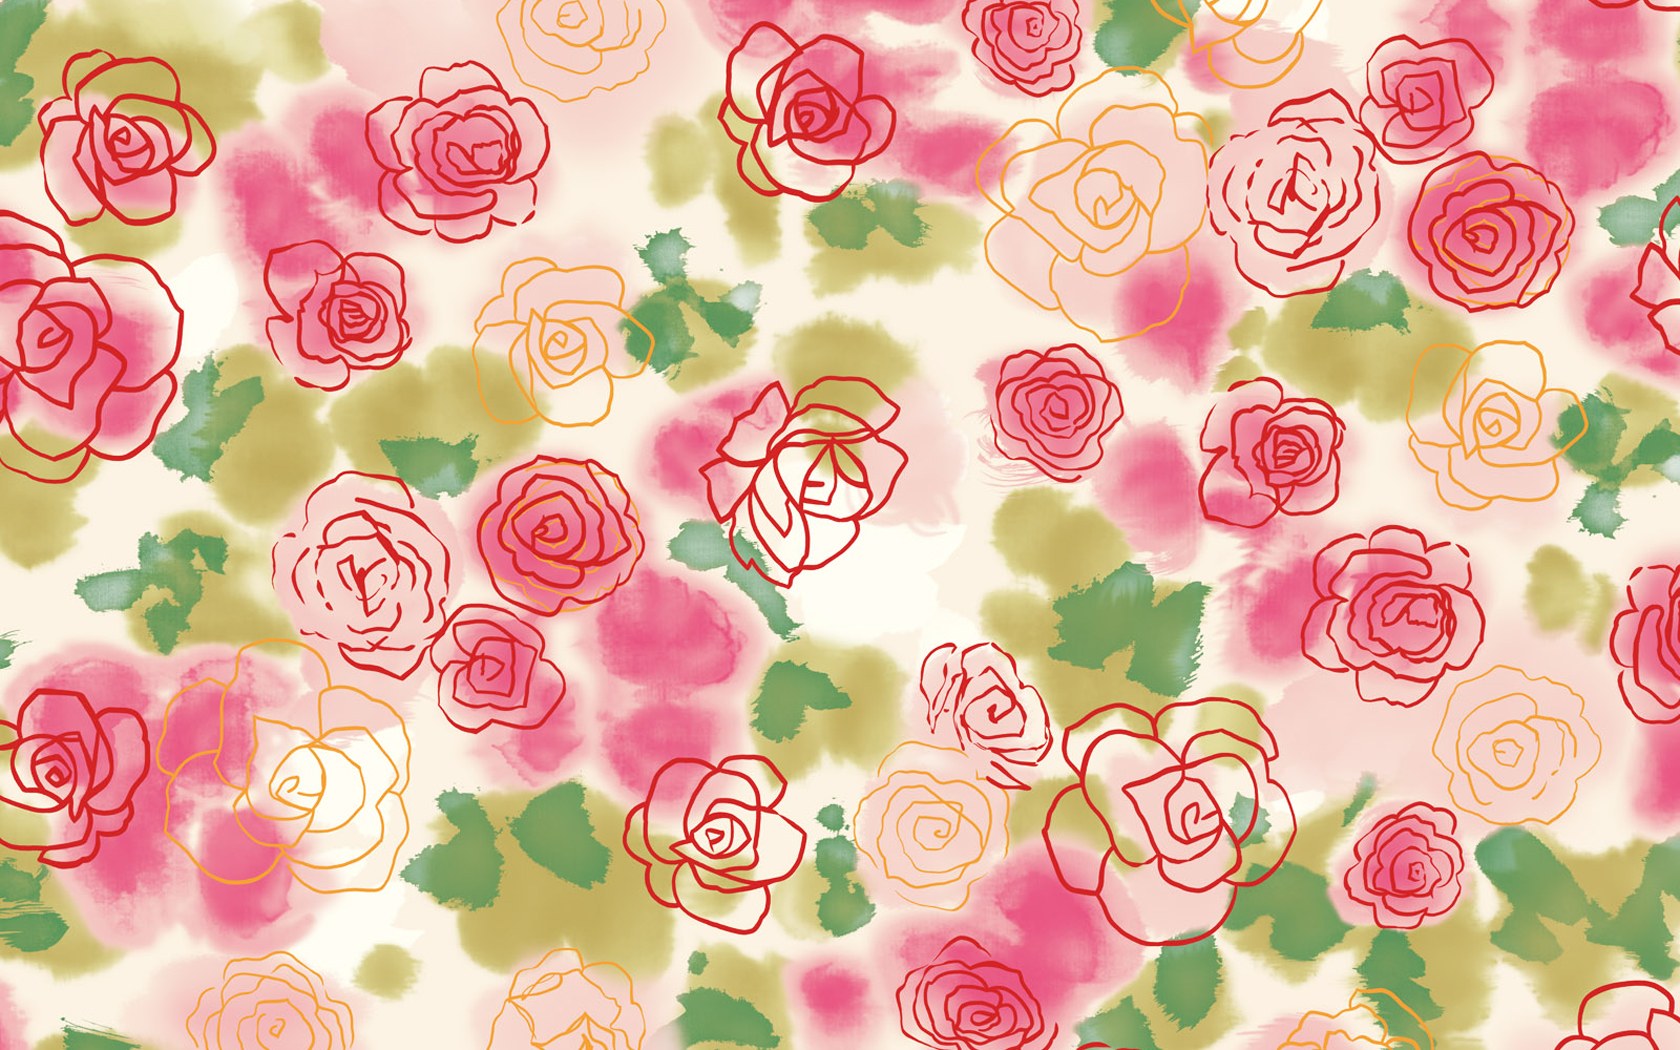 Design Floral Patterns Illustrations Wallpaper